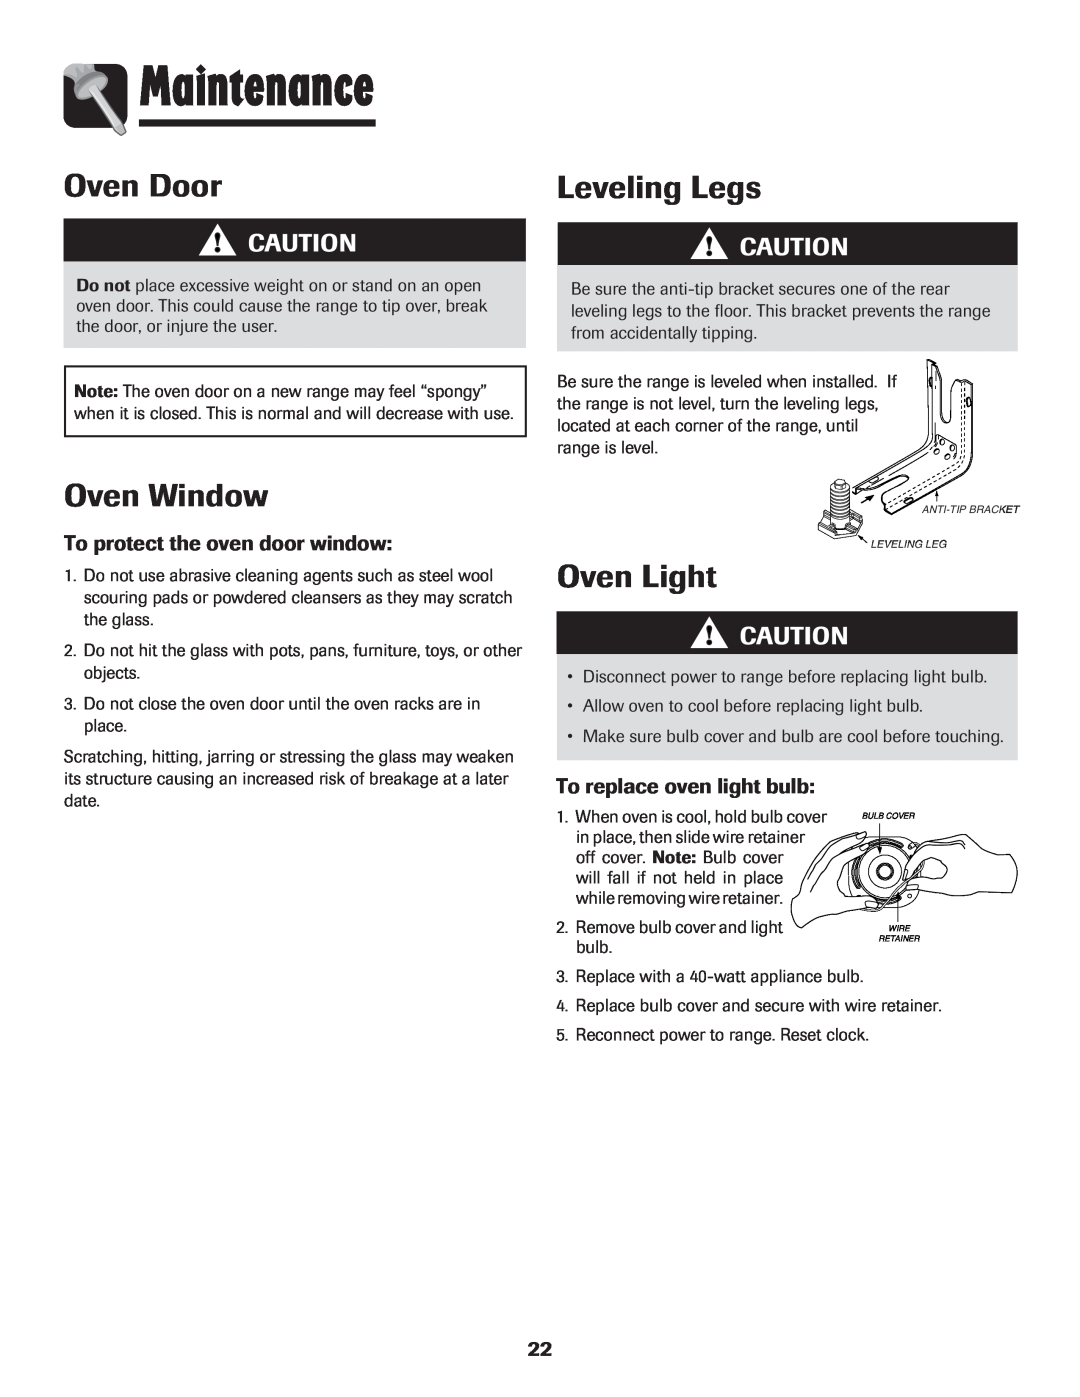 Maytag Range Maintenance, Oven Door, Oven Window, Leveling Legs, To protect the oven door window, Oven Light 